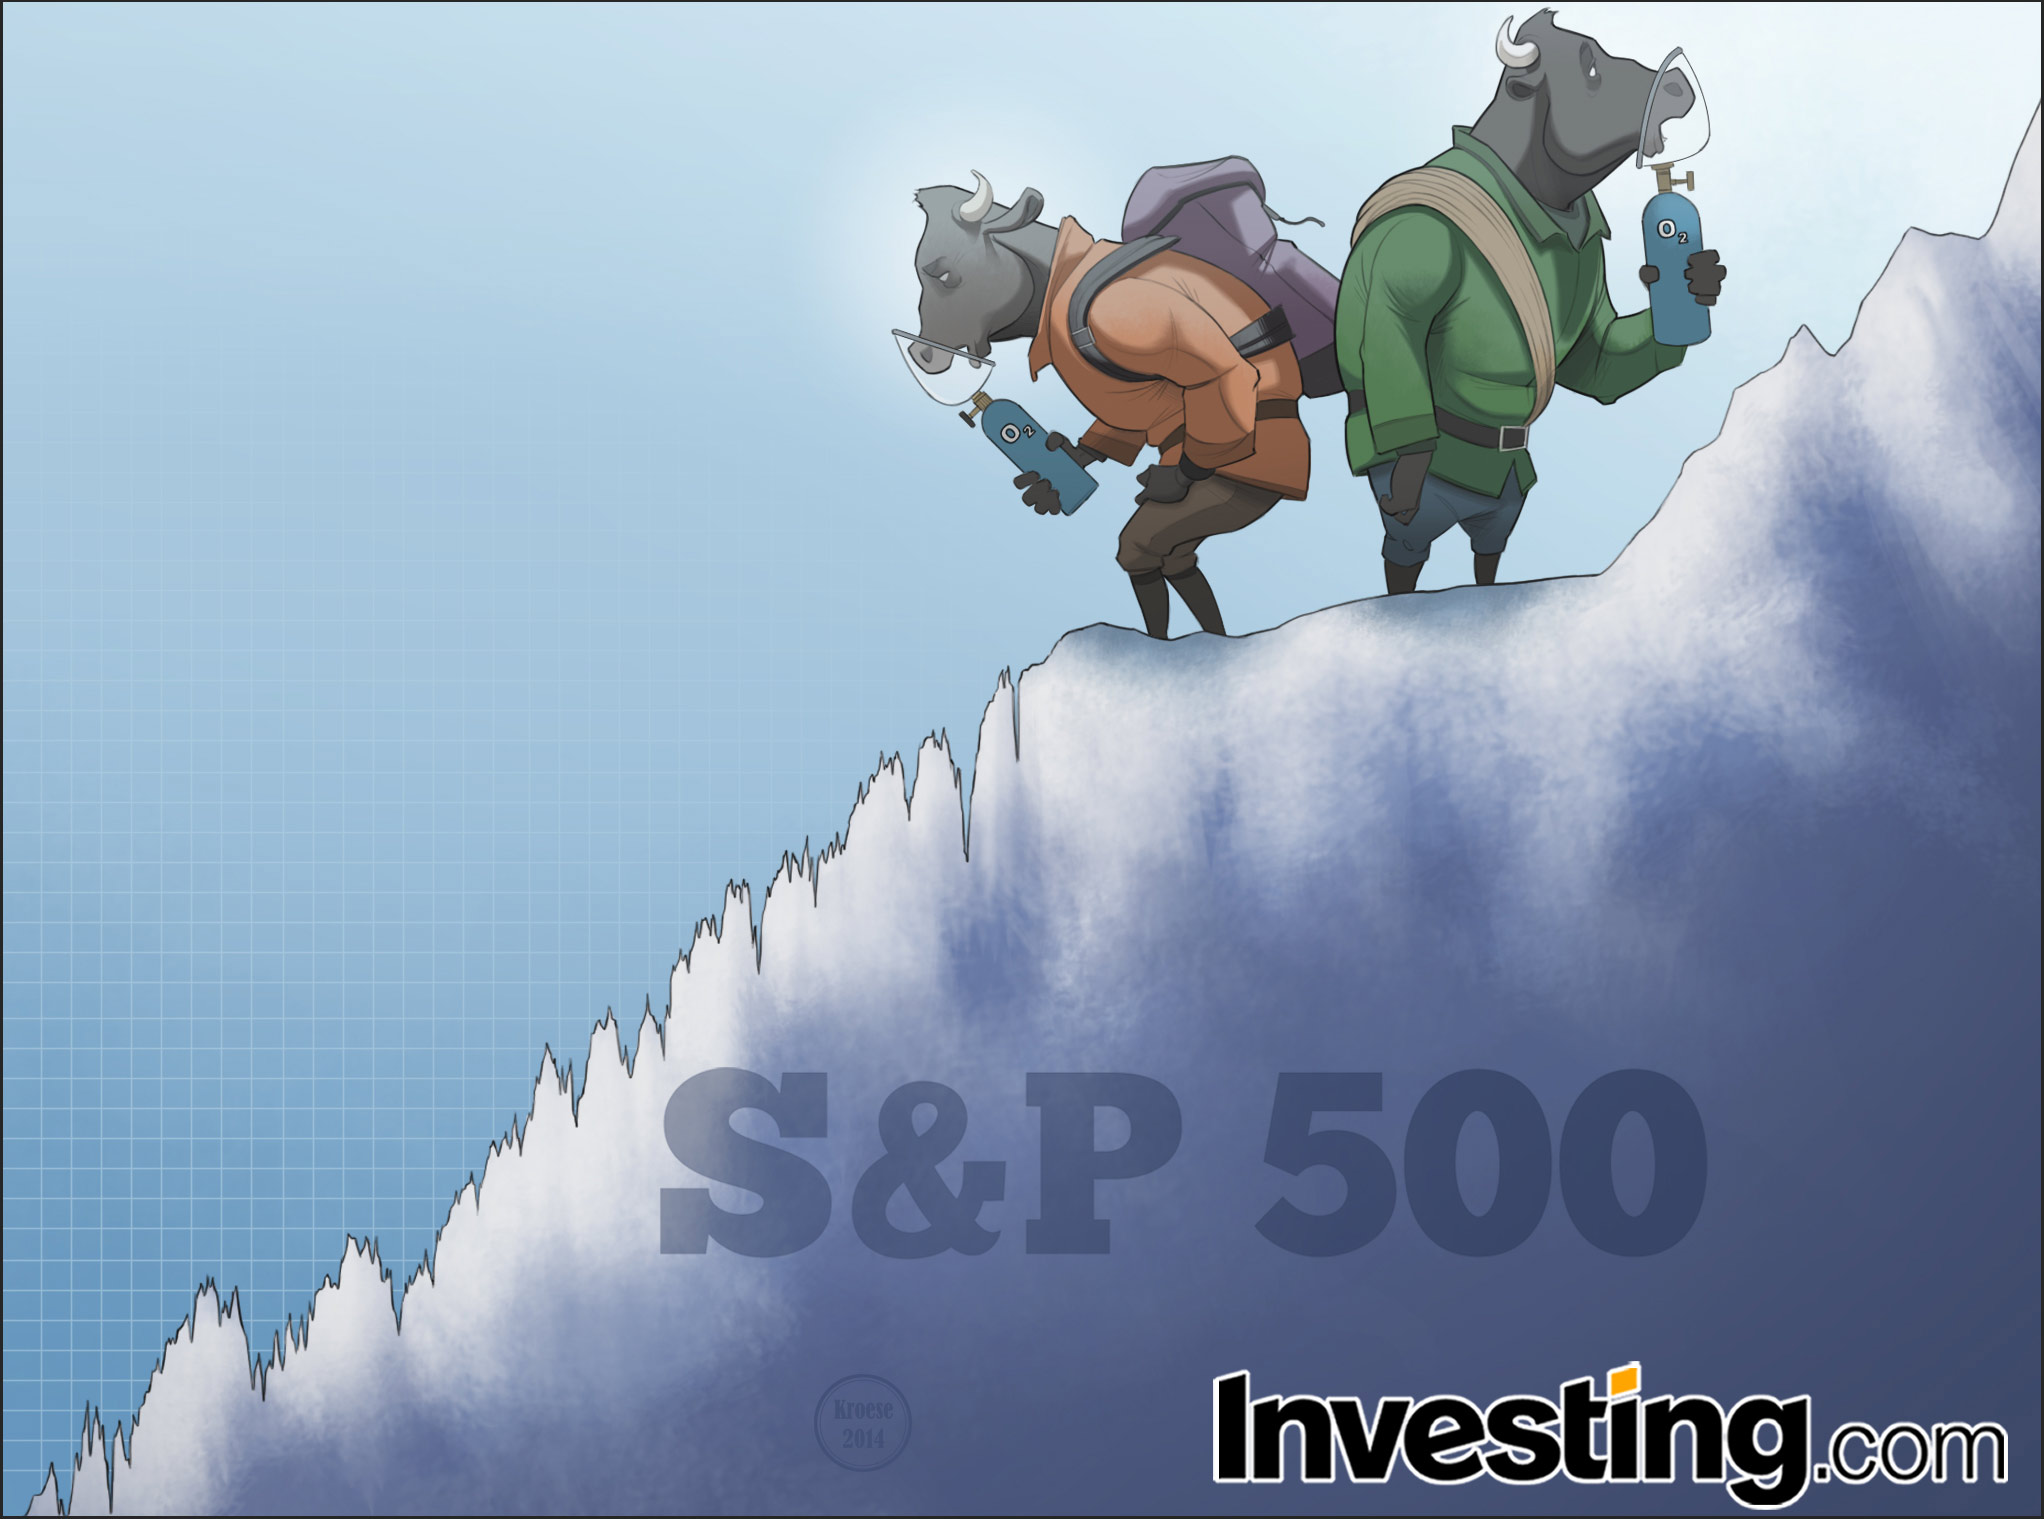 Onko ilmasta tullut liian ohutta, jotta osakemarkkinoiden härät voisivat jatkaa nousuaan vuonna 2015?